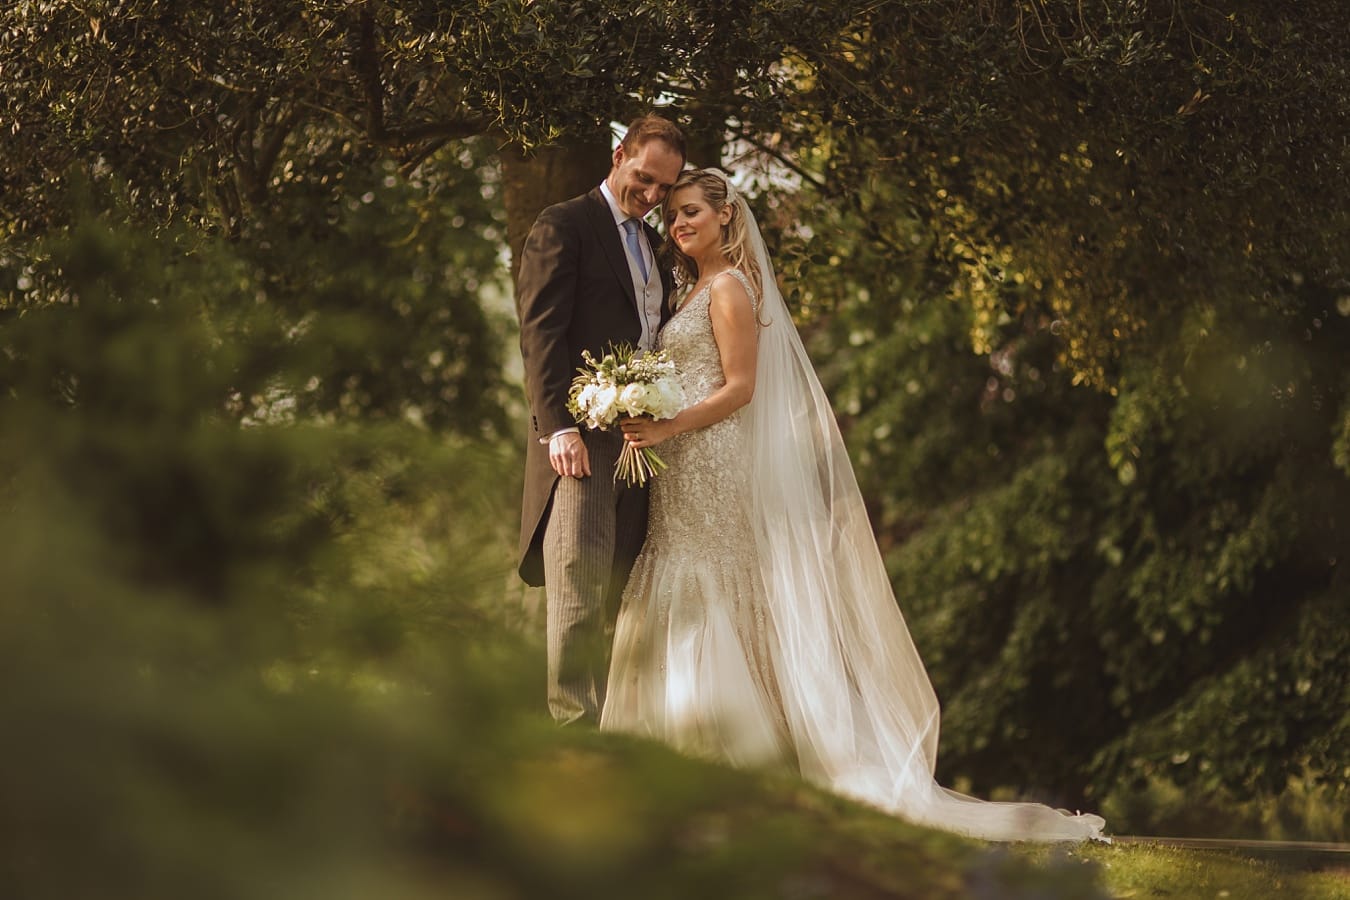 Crystal + Mark – Bath Wedding Photographer